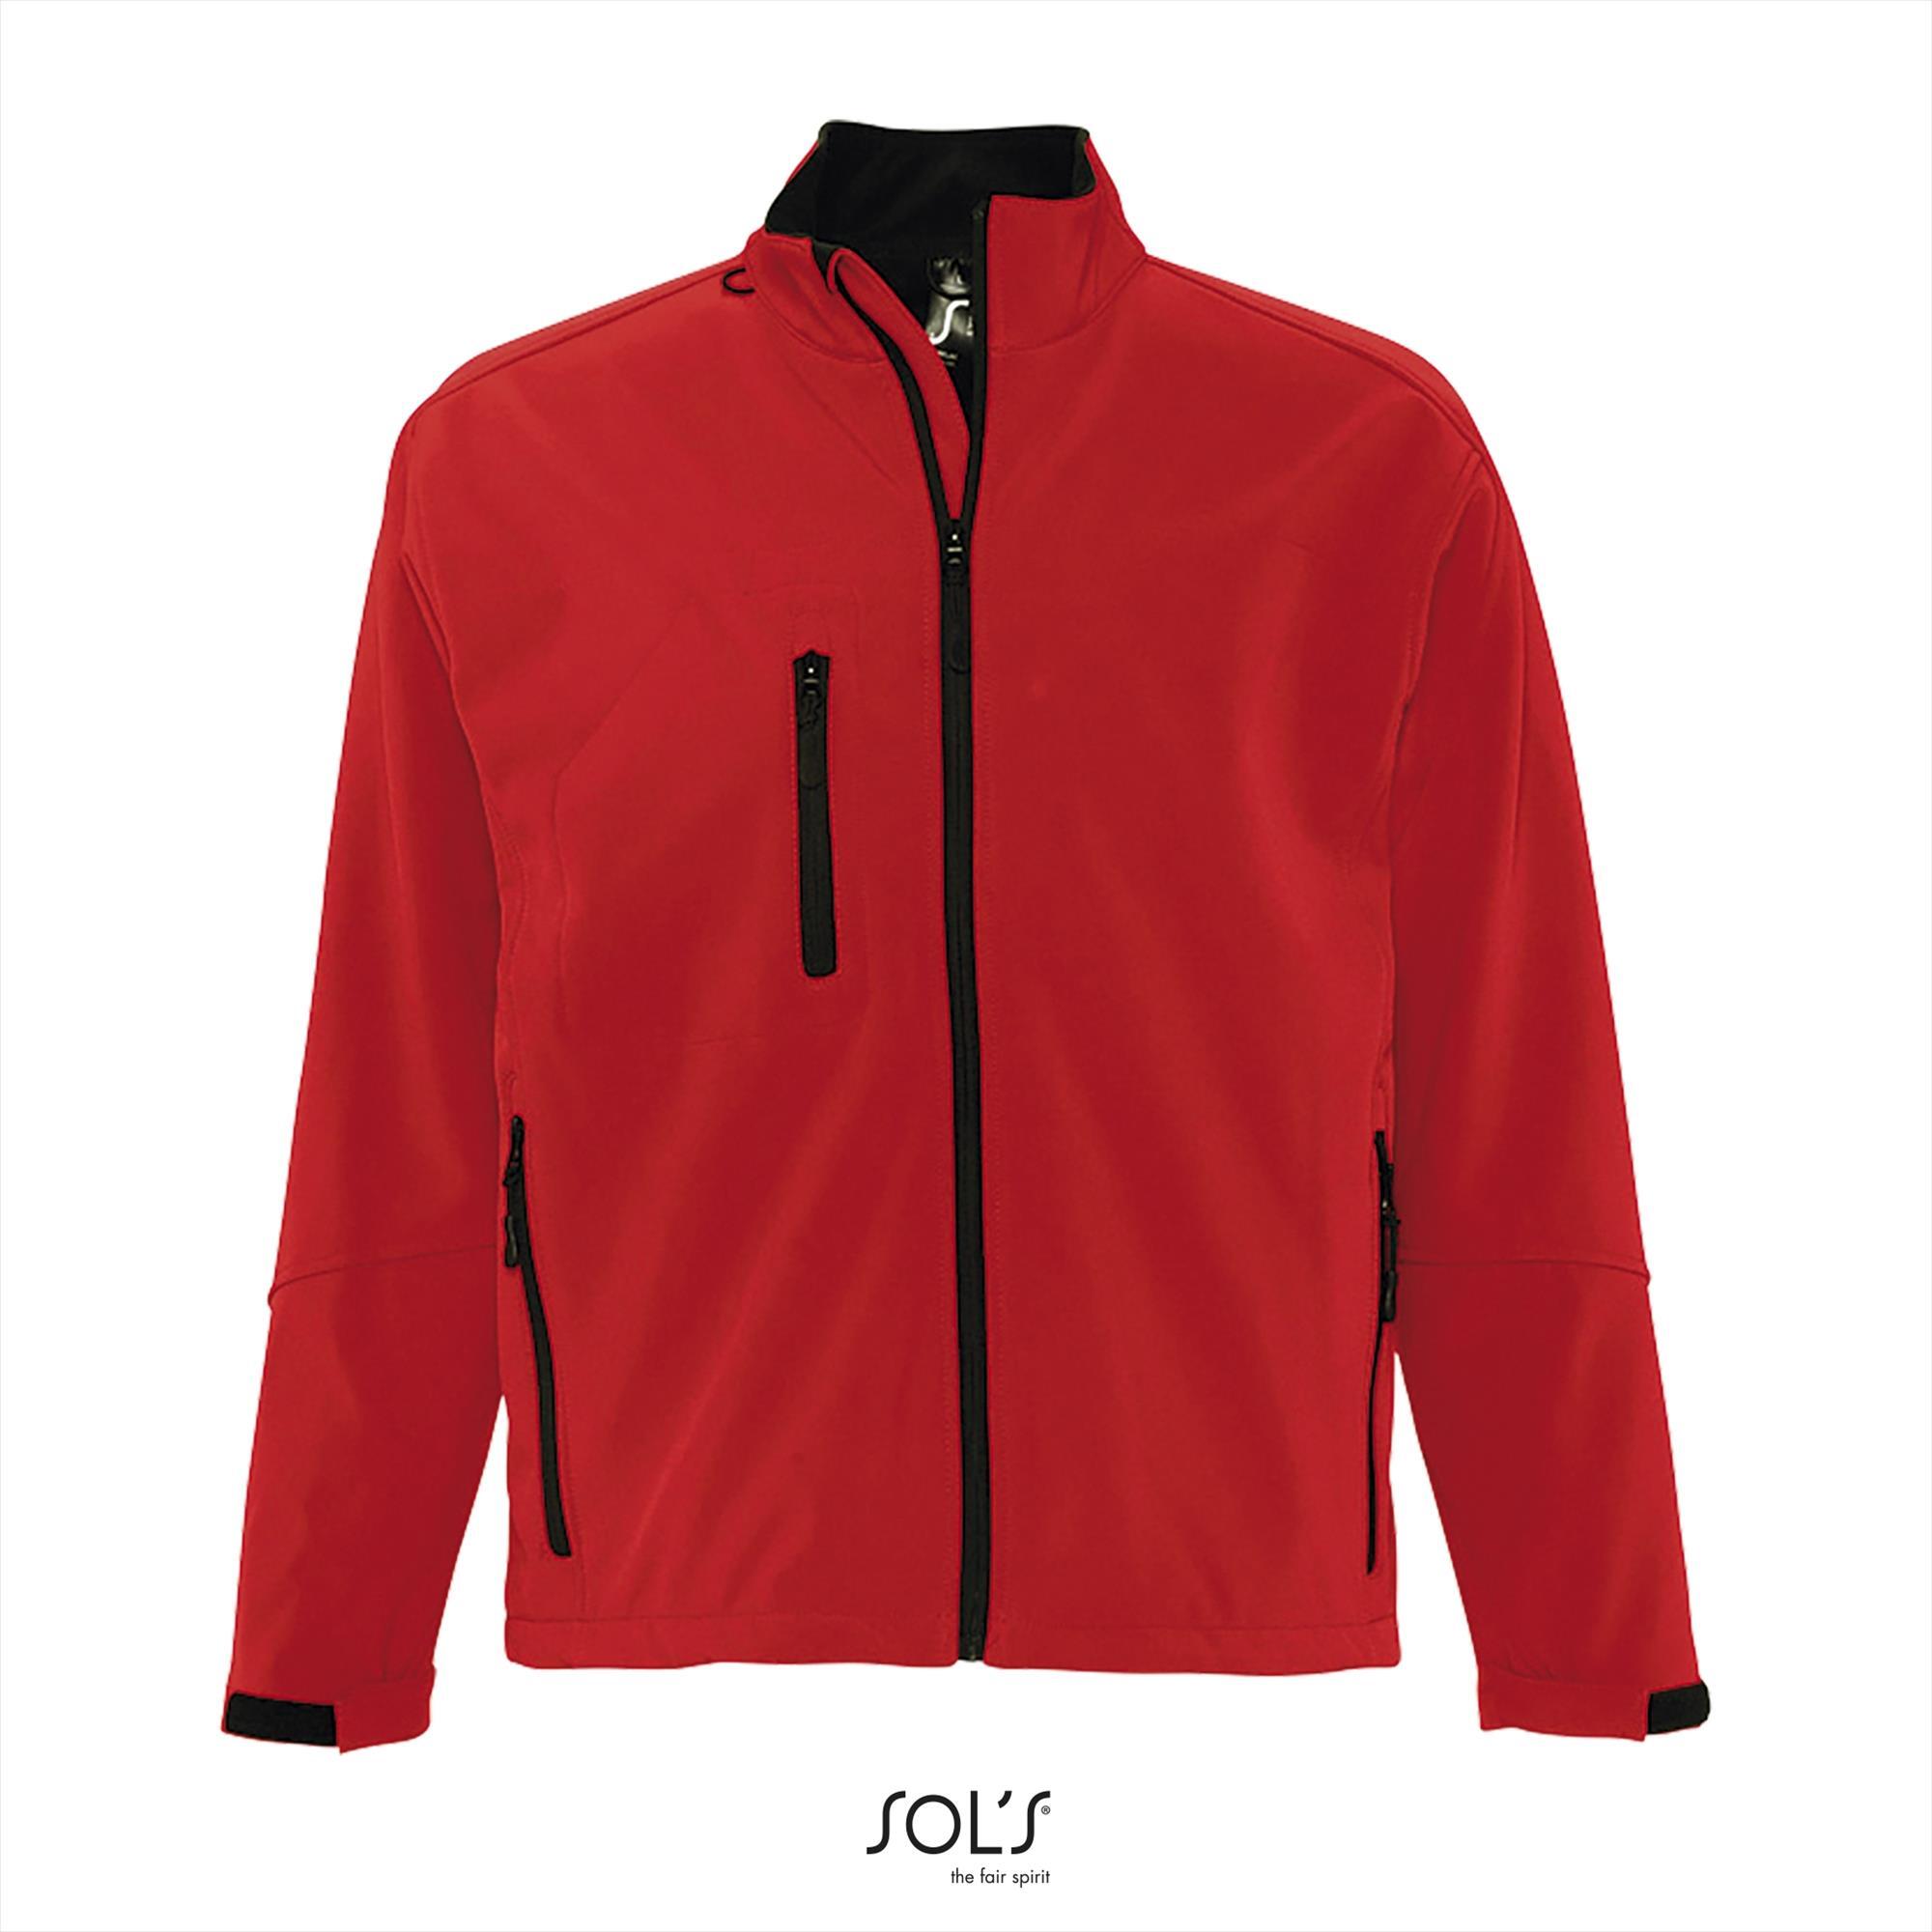 Sportieve heren softshell jacket peper rood met een borstzakje.